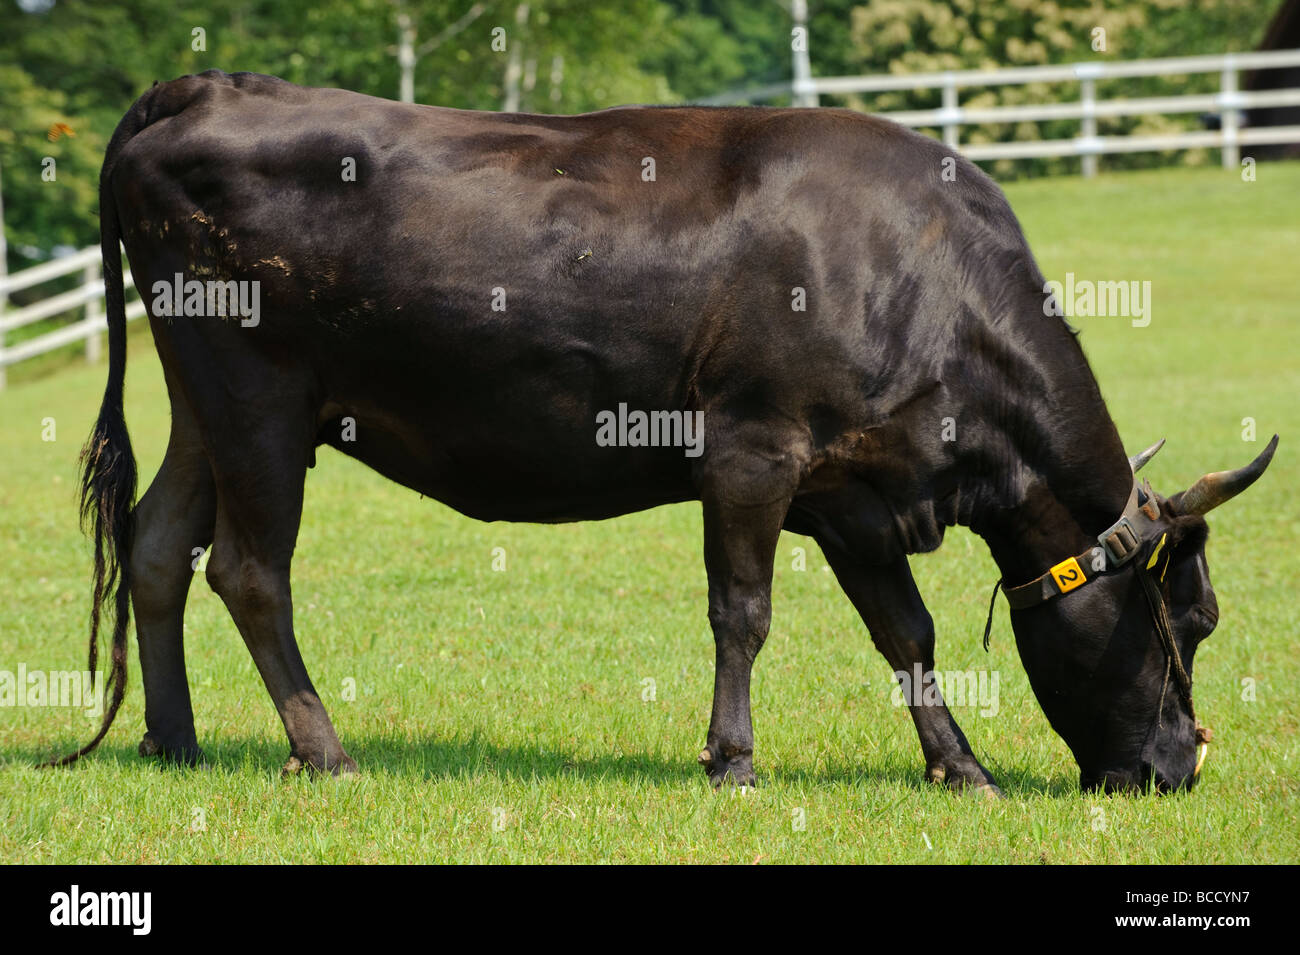 Wagyu cow immagini e fotografie stock ad alta risoluzione - Alamy